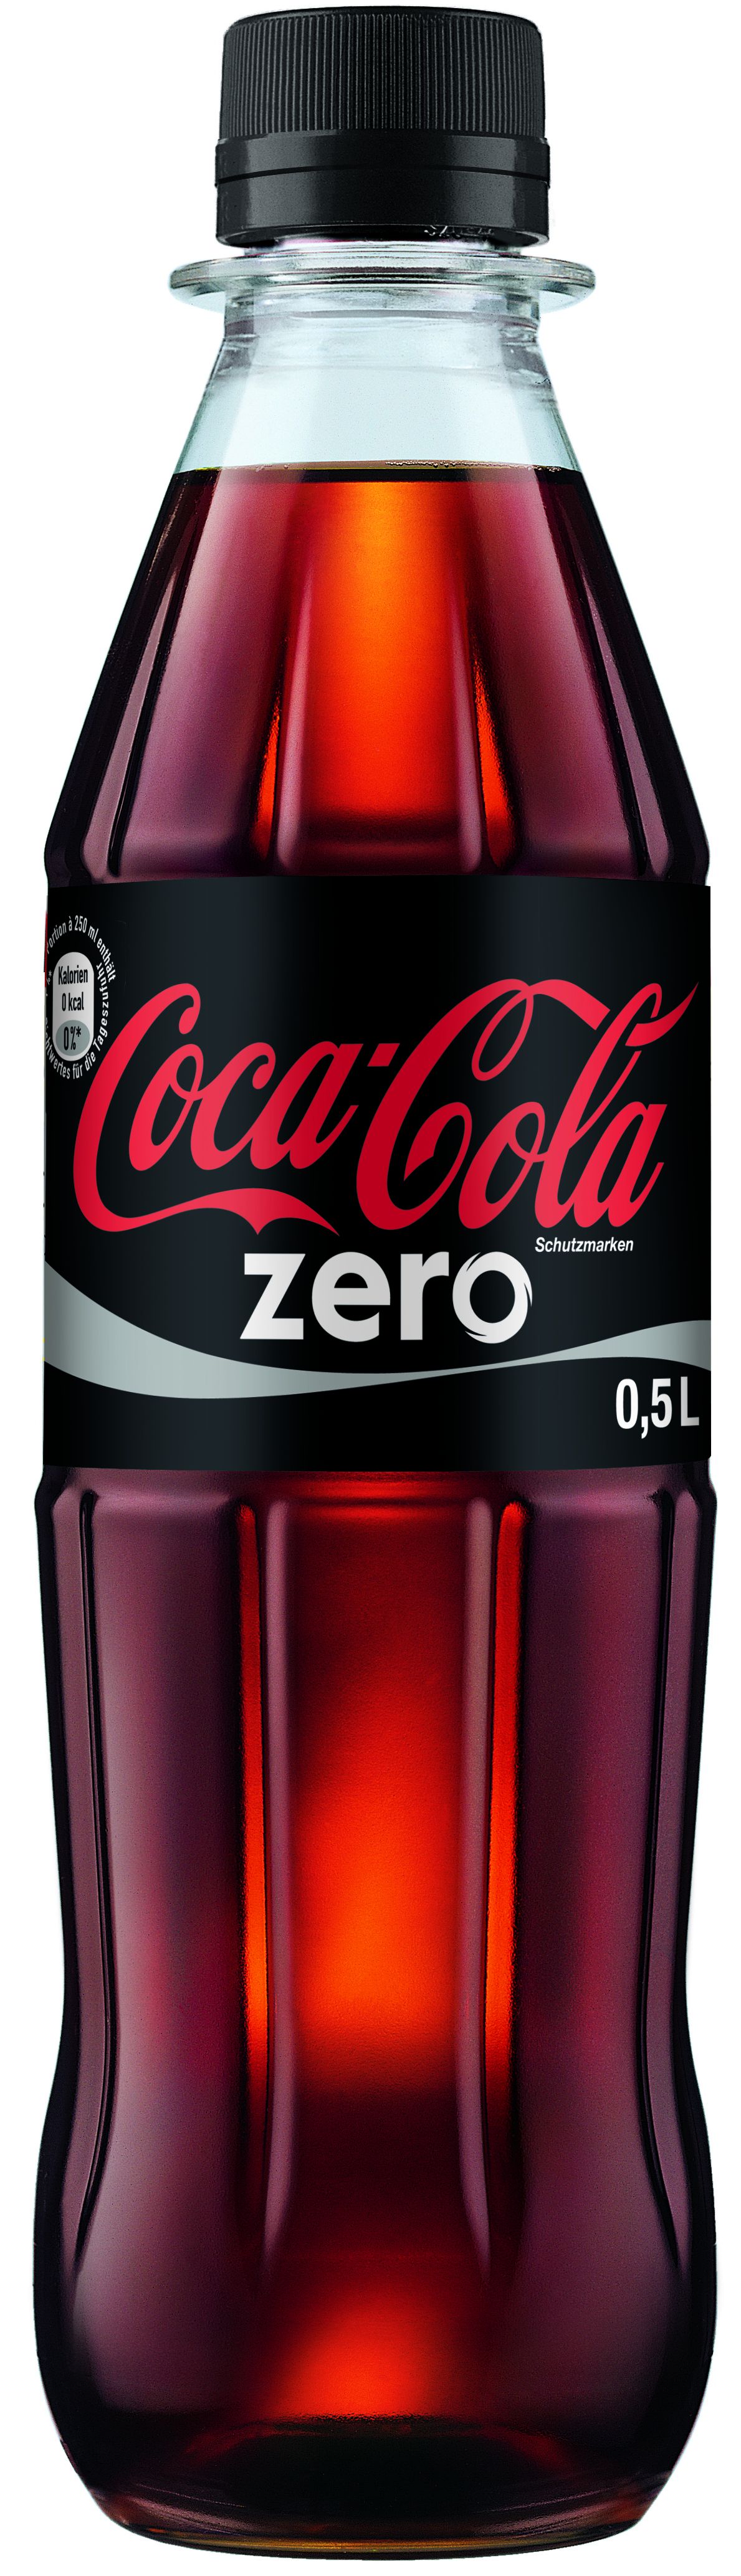 Coca Zero-image